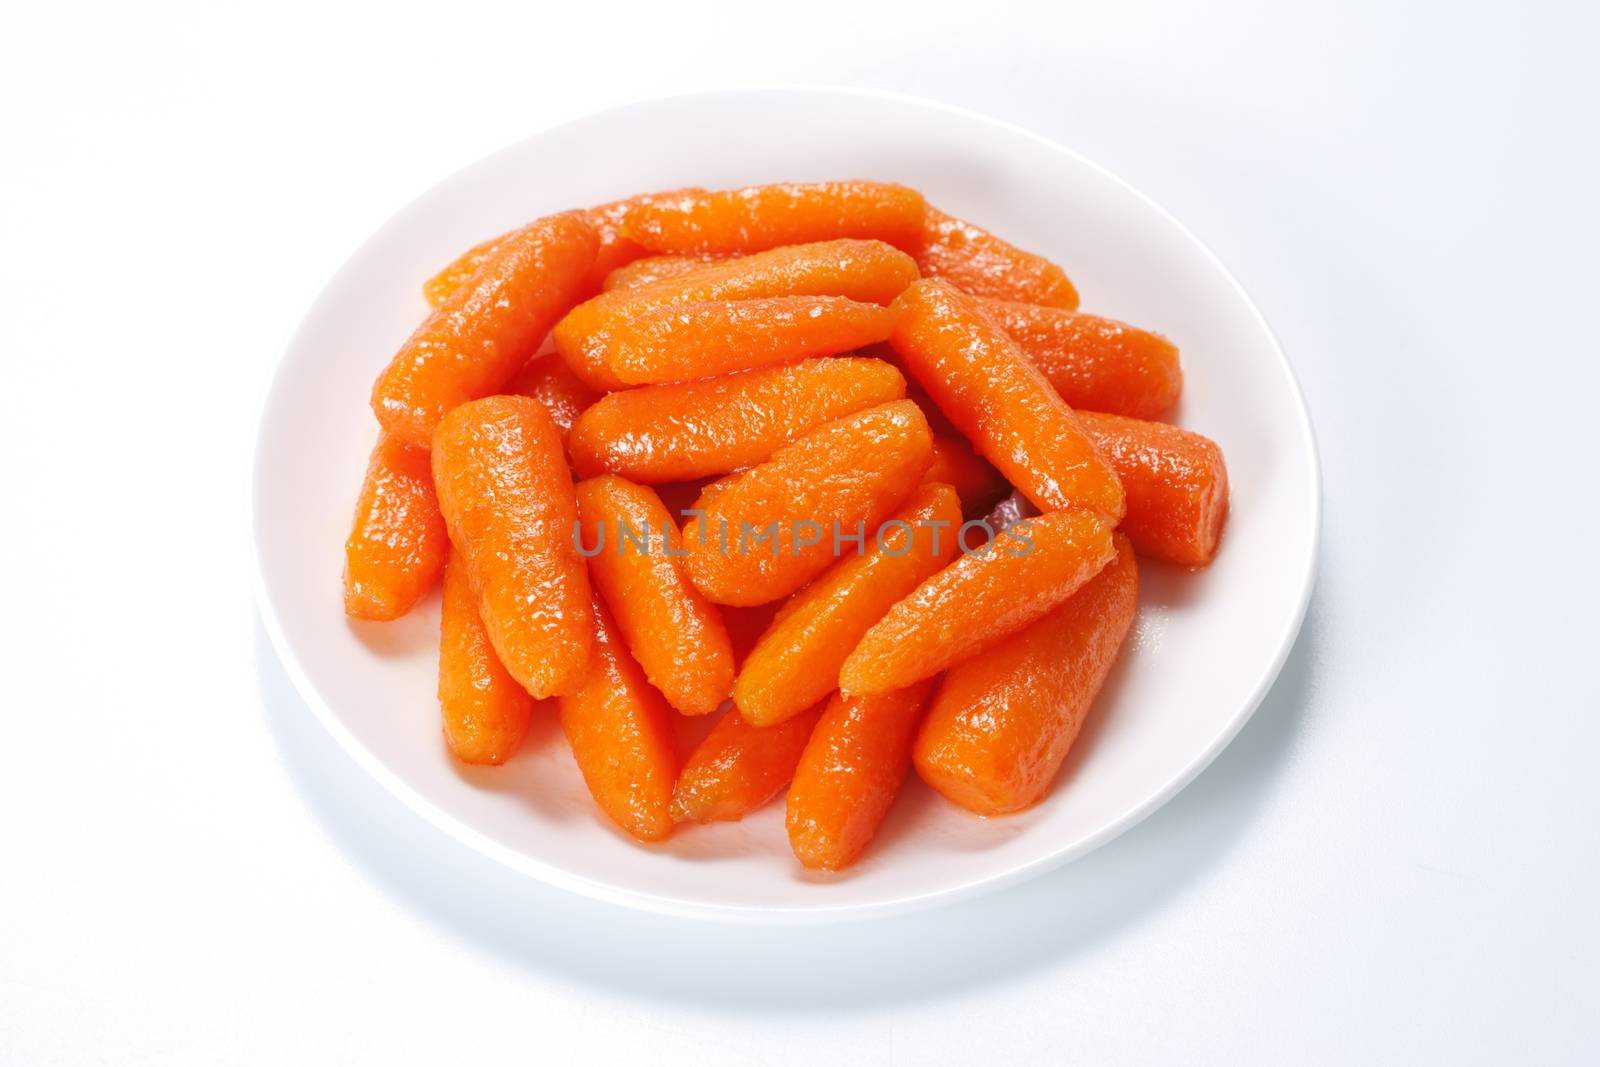 Honey glazed baby carrots in plate